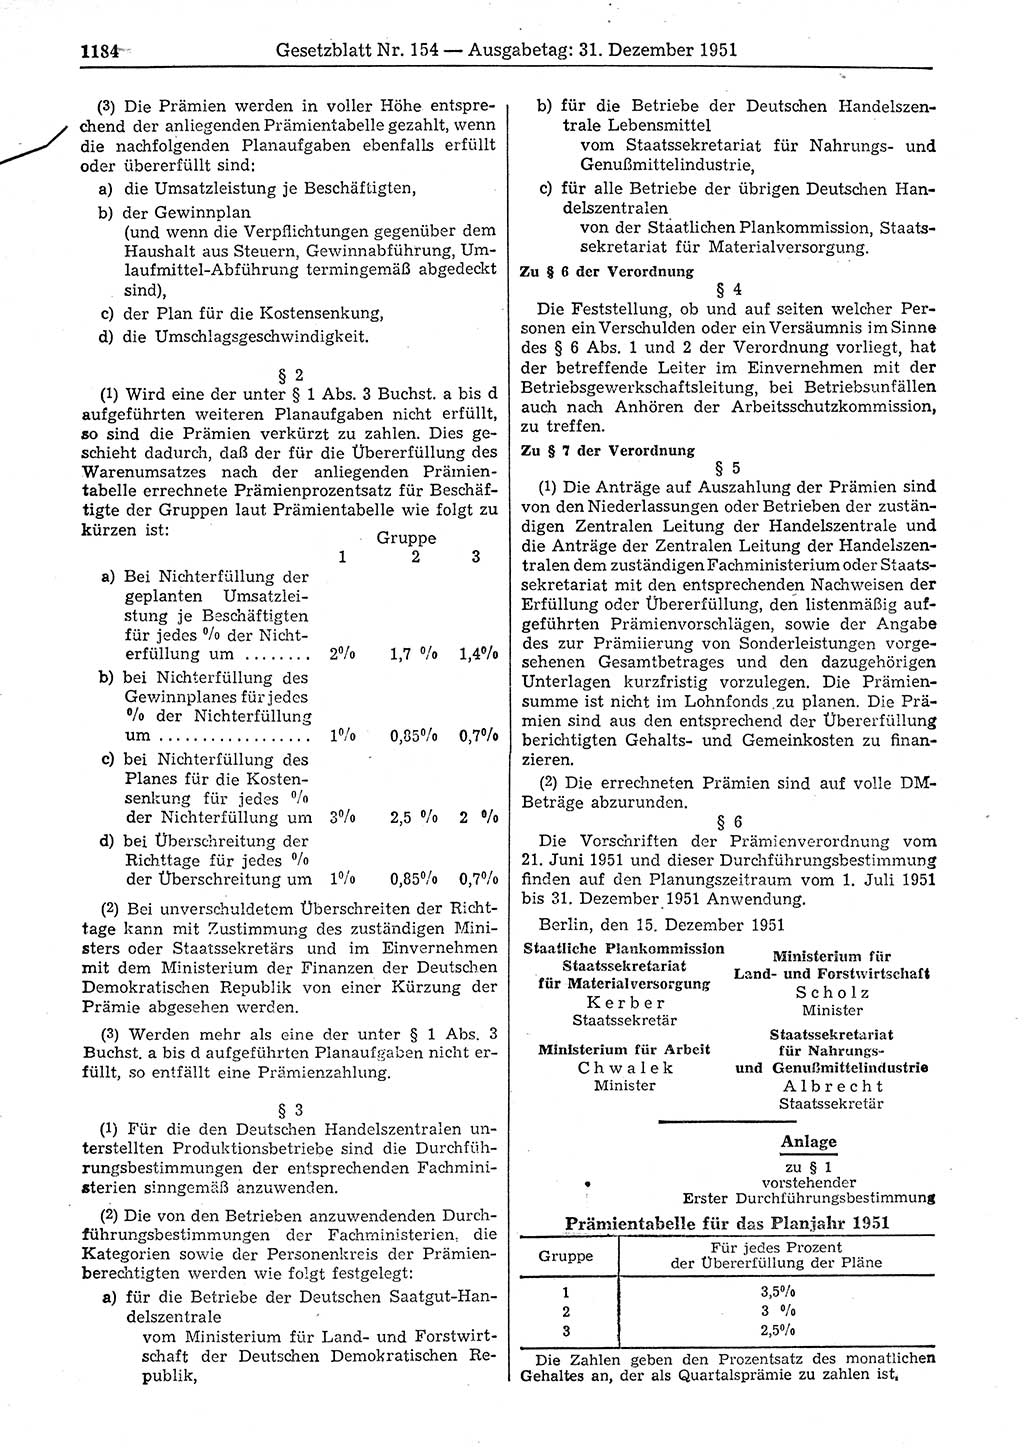 Gesetzblatt (GBl.) der Deutschen Demokratischen Republik (DDR) 1951, Seite 1184 (GBl. DDR 1951, S. 1184)